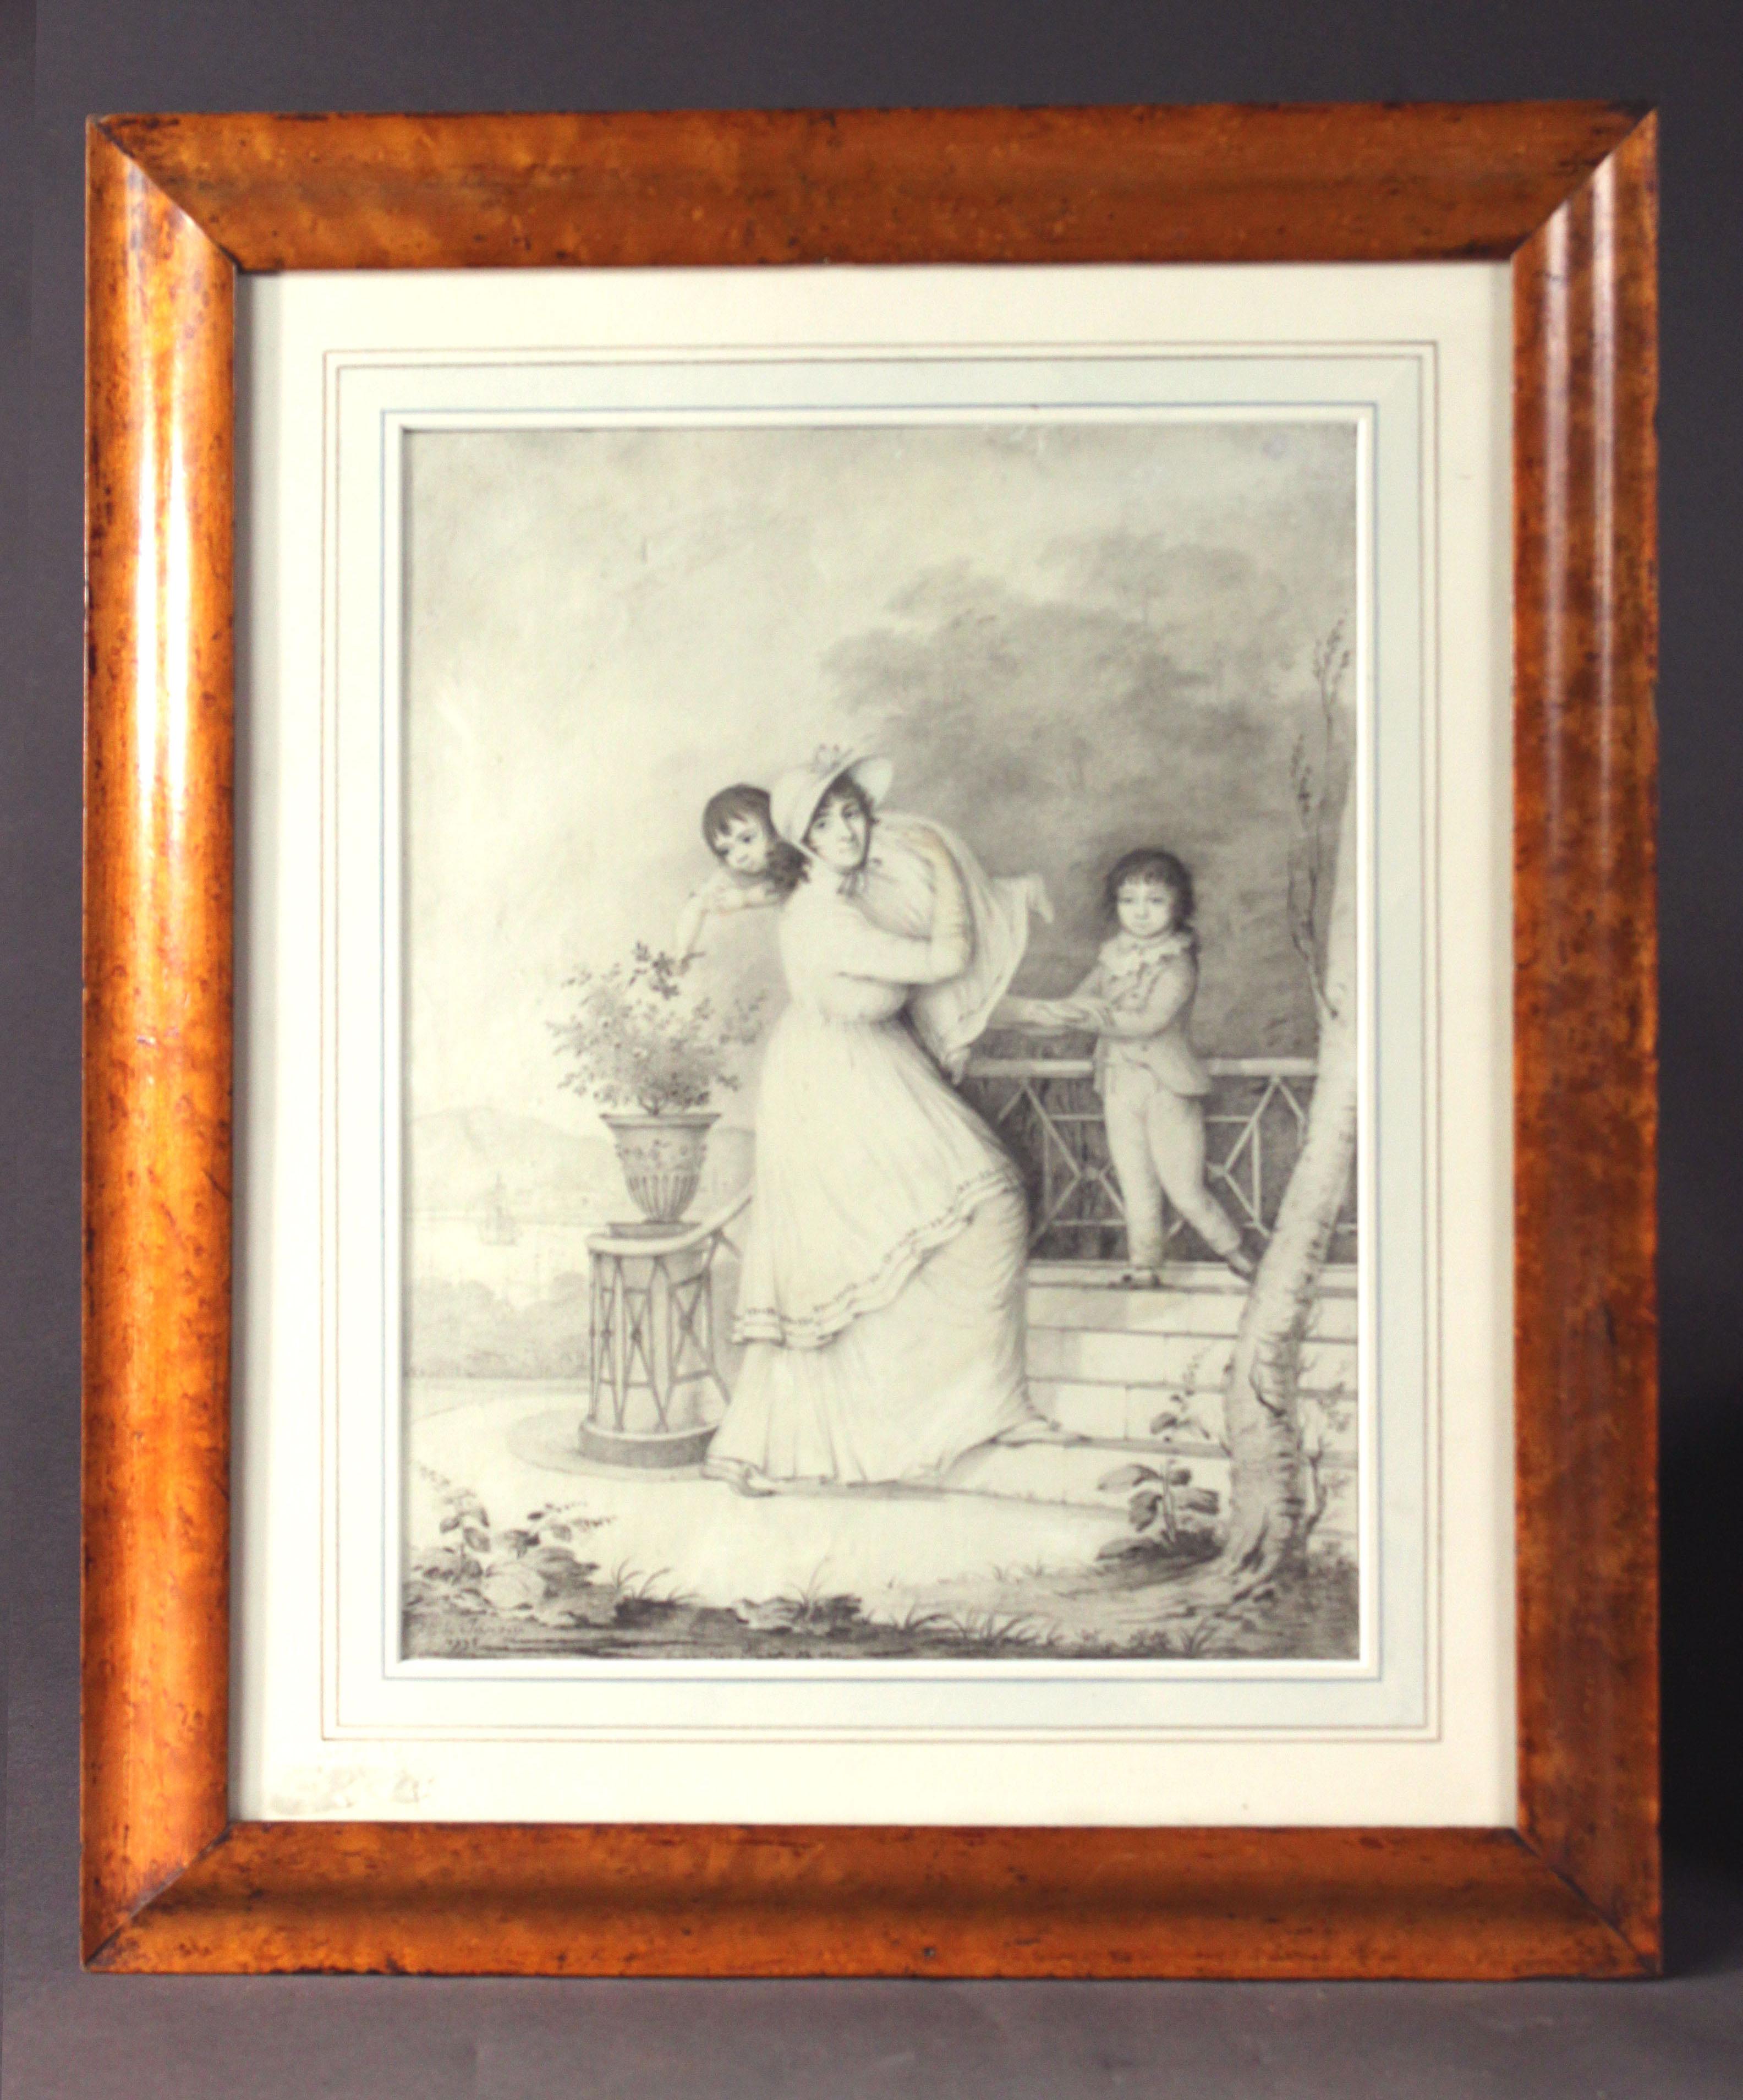 Ein Paar lavierter Zeichnungen von Sir John und Lady Stanley und ihren Kindern John Thomas und Isabella. Auch Sir Johns Spaniel ist auf dem Bild zu sehen.
Von H. Jouvry aus den Jahren 1798 und 1799
In Rahmen aus Vogelaugenahorn
Bilder 10